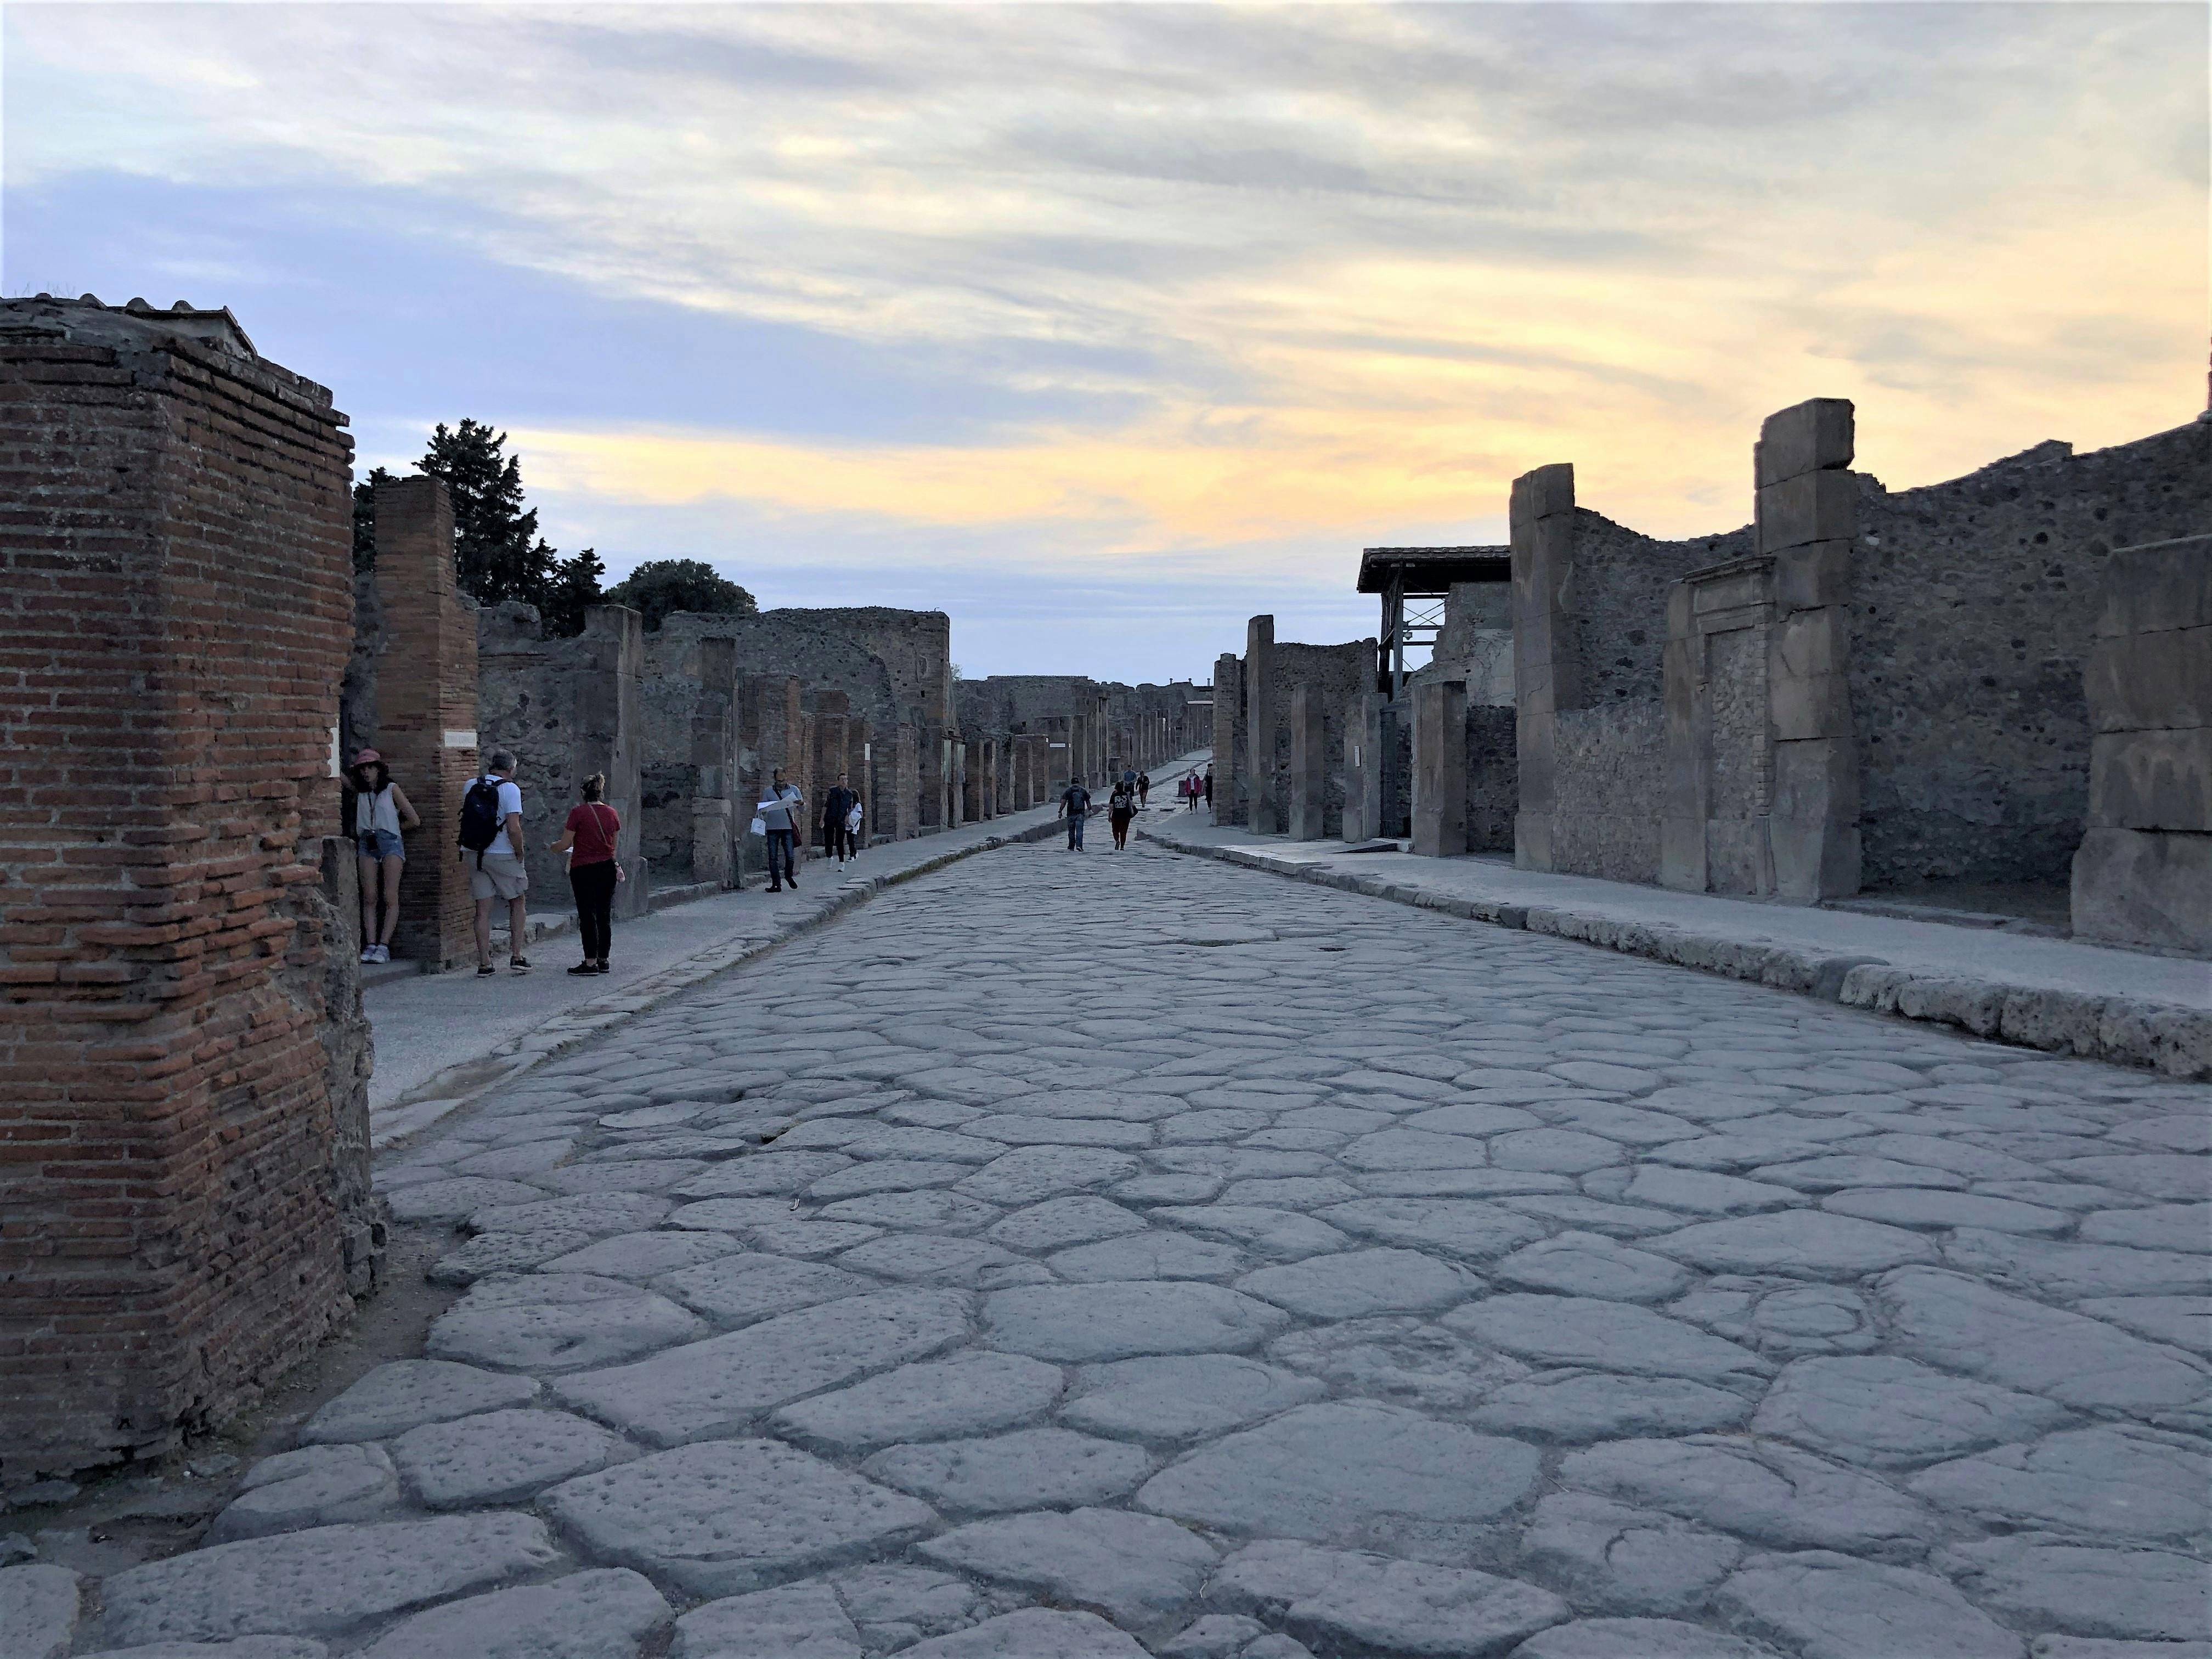 Tour di Pompei per piccoli gruppi dal pomeriggio al tramonto